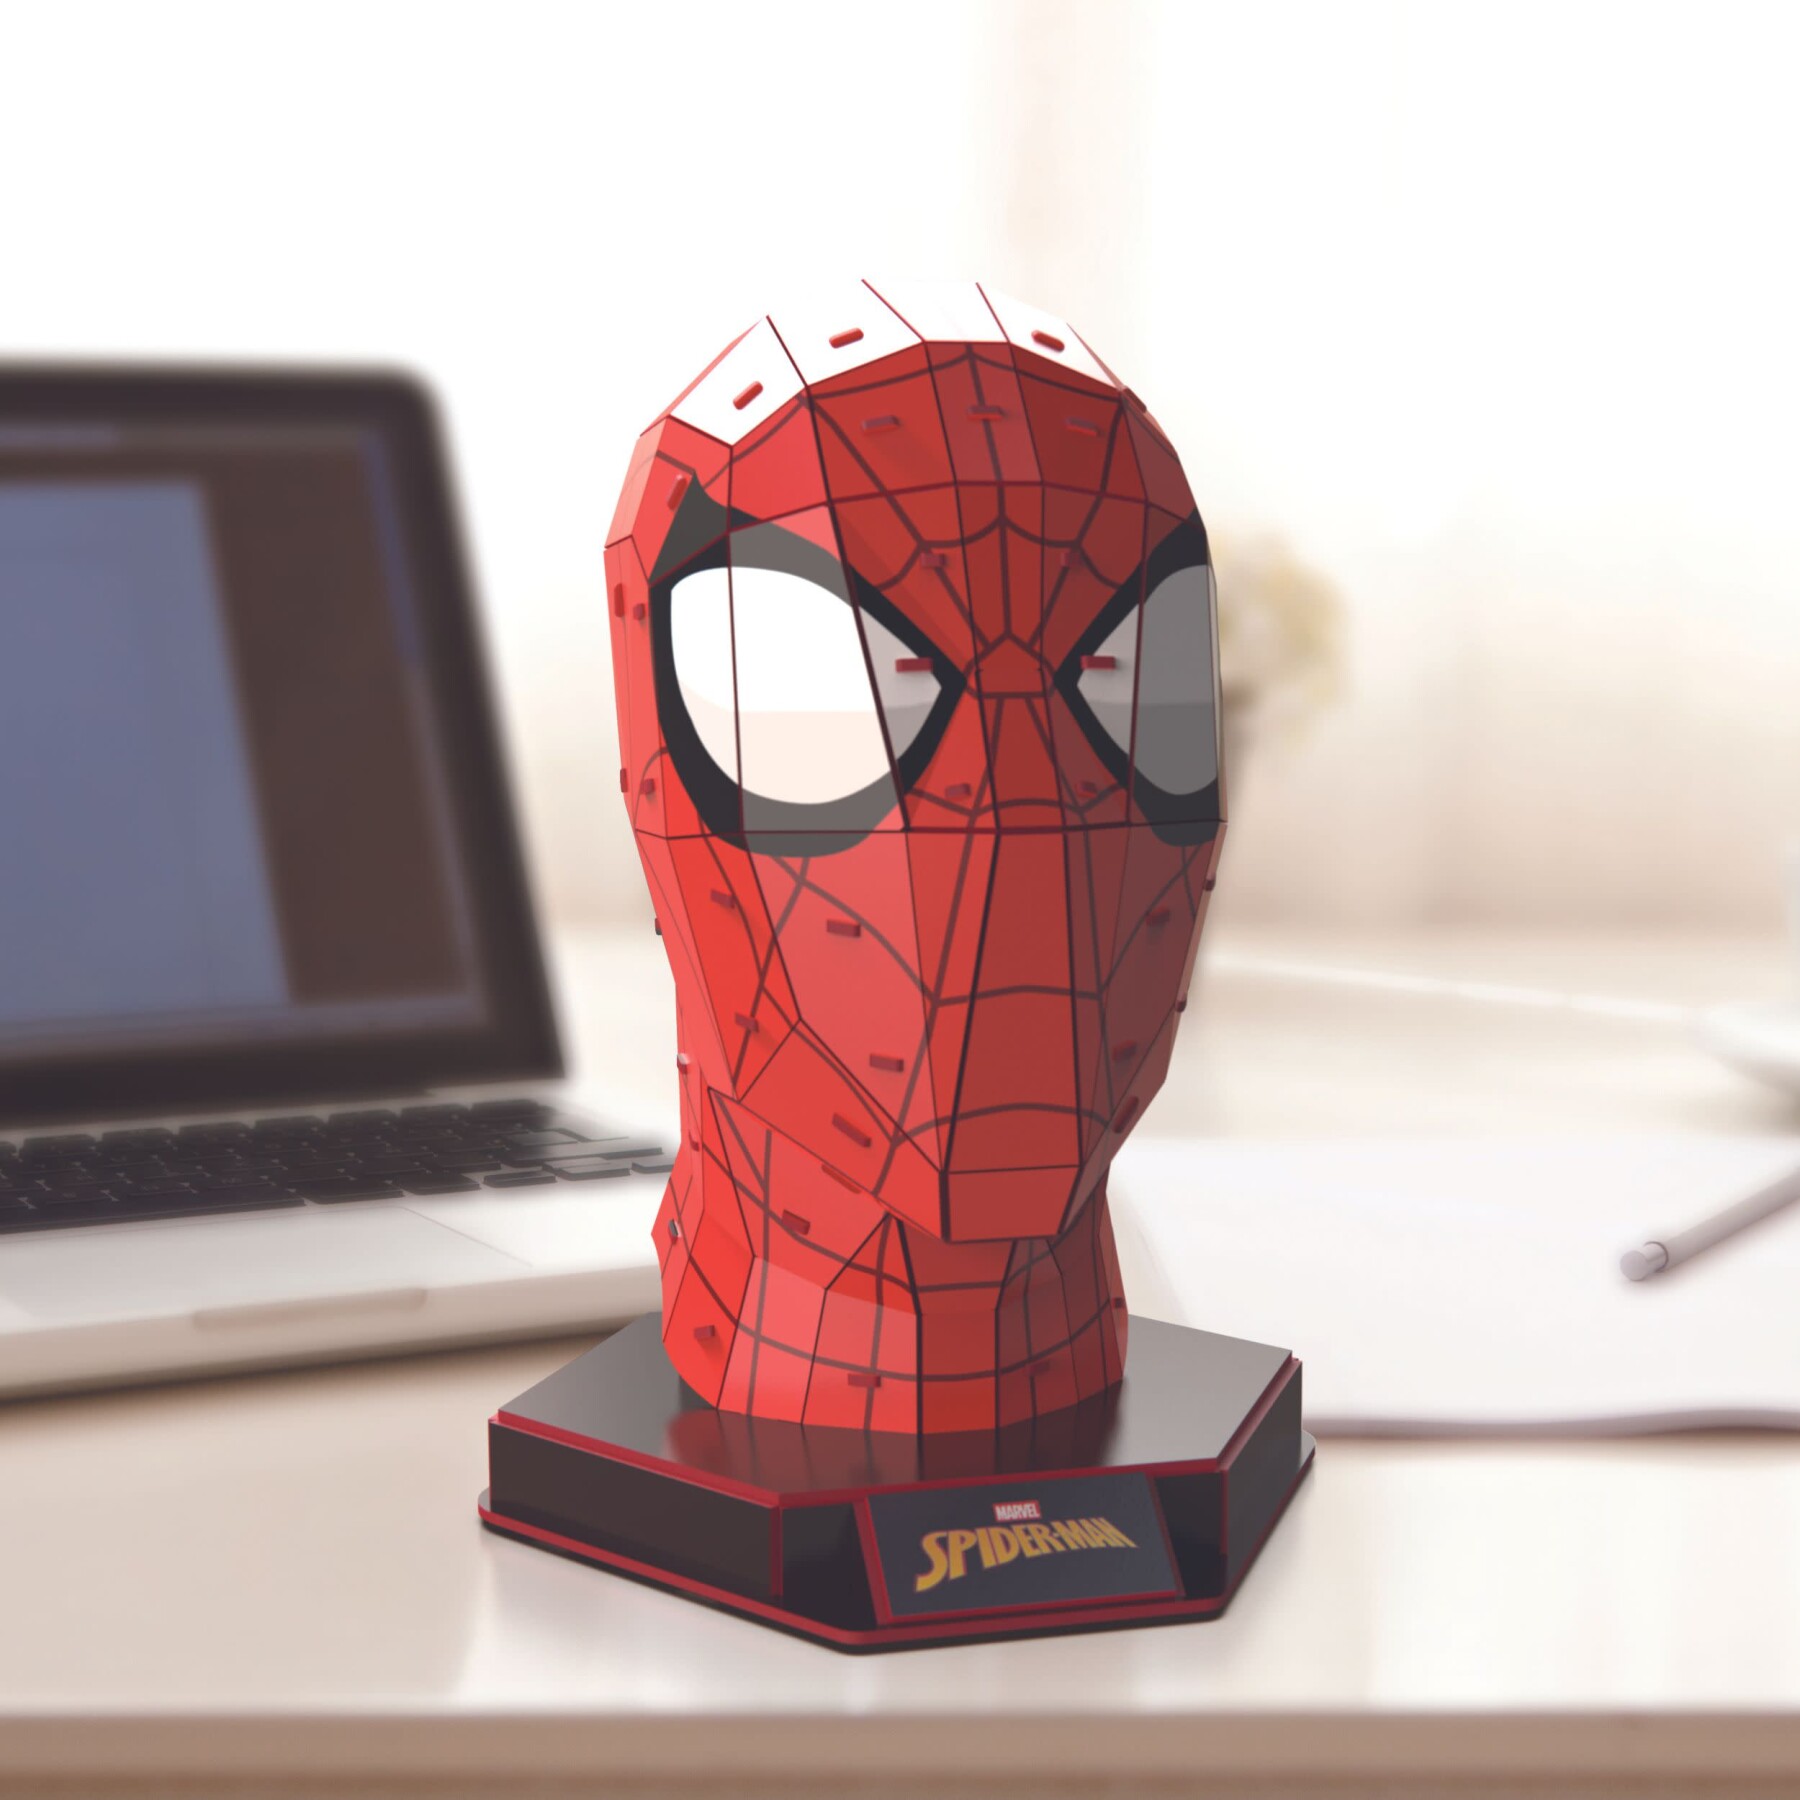 4d build, kit di modellismo per puzzle 3d marvel spider-man da 82 pezzi con  supporto